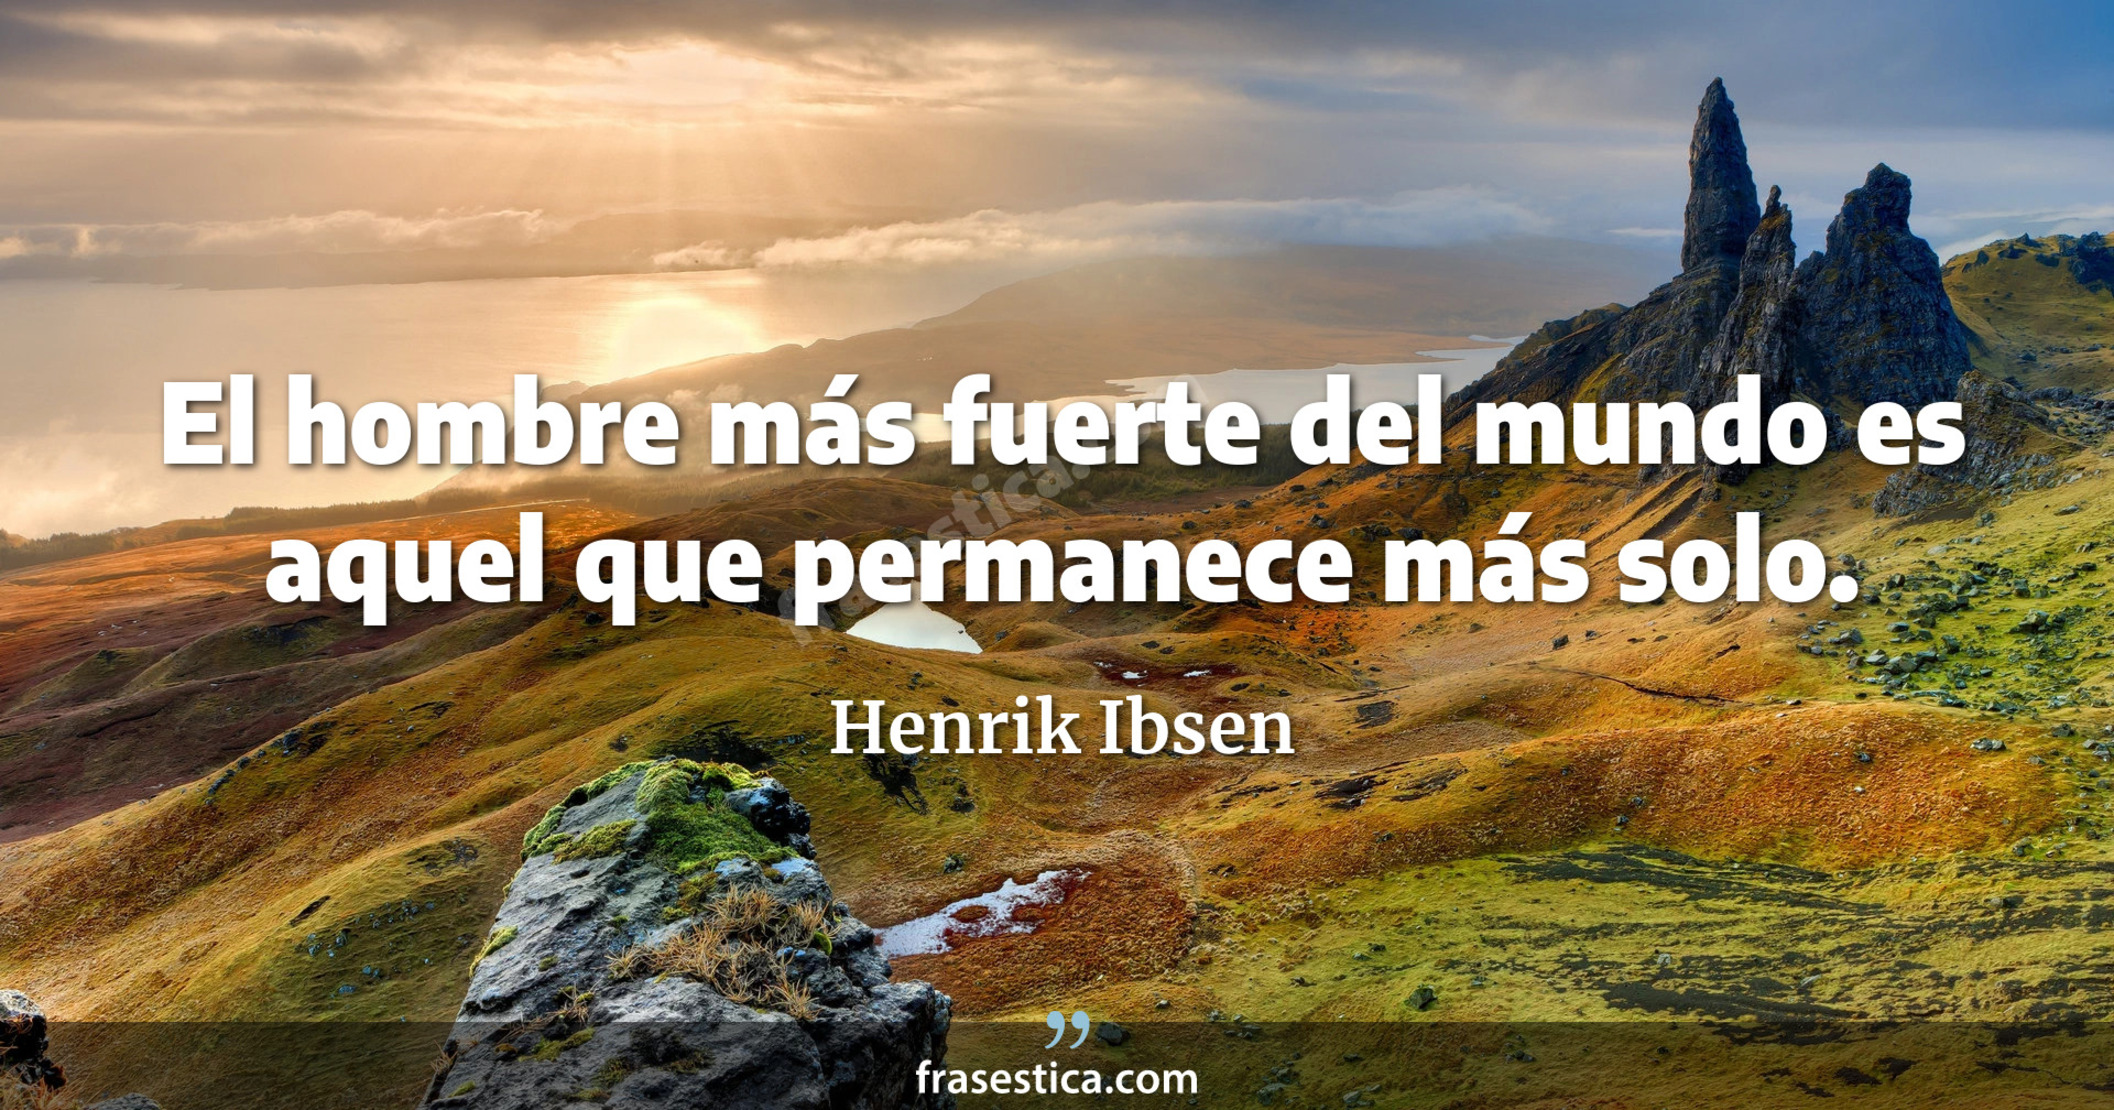 El hombre más fuerte del mundo es aquel que permanece más solo. - Henrik Ibsen